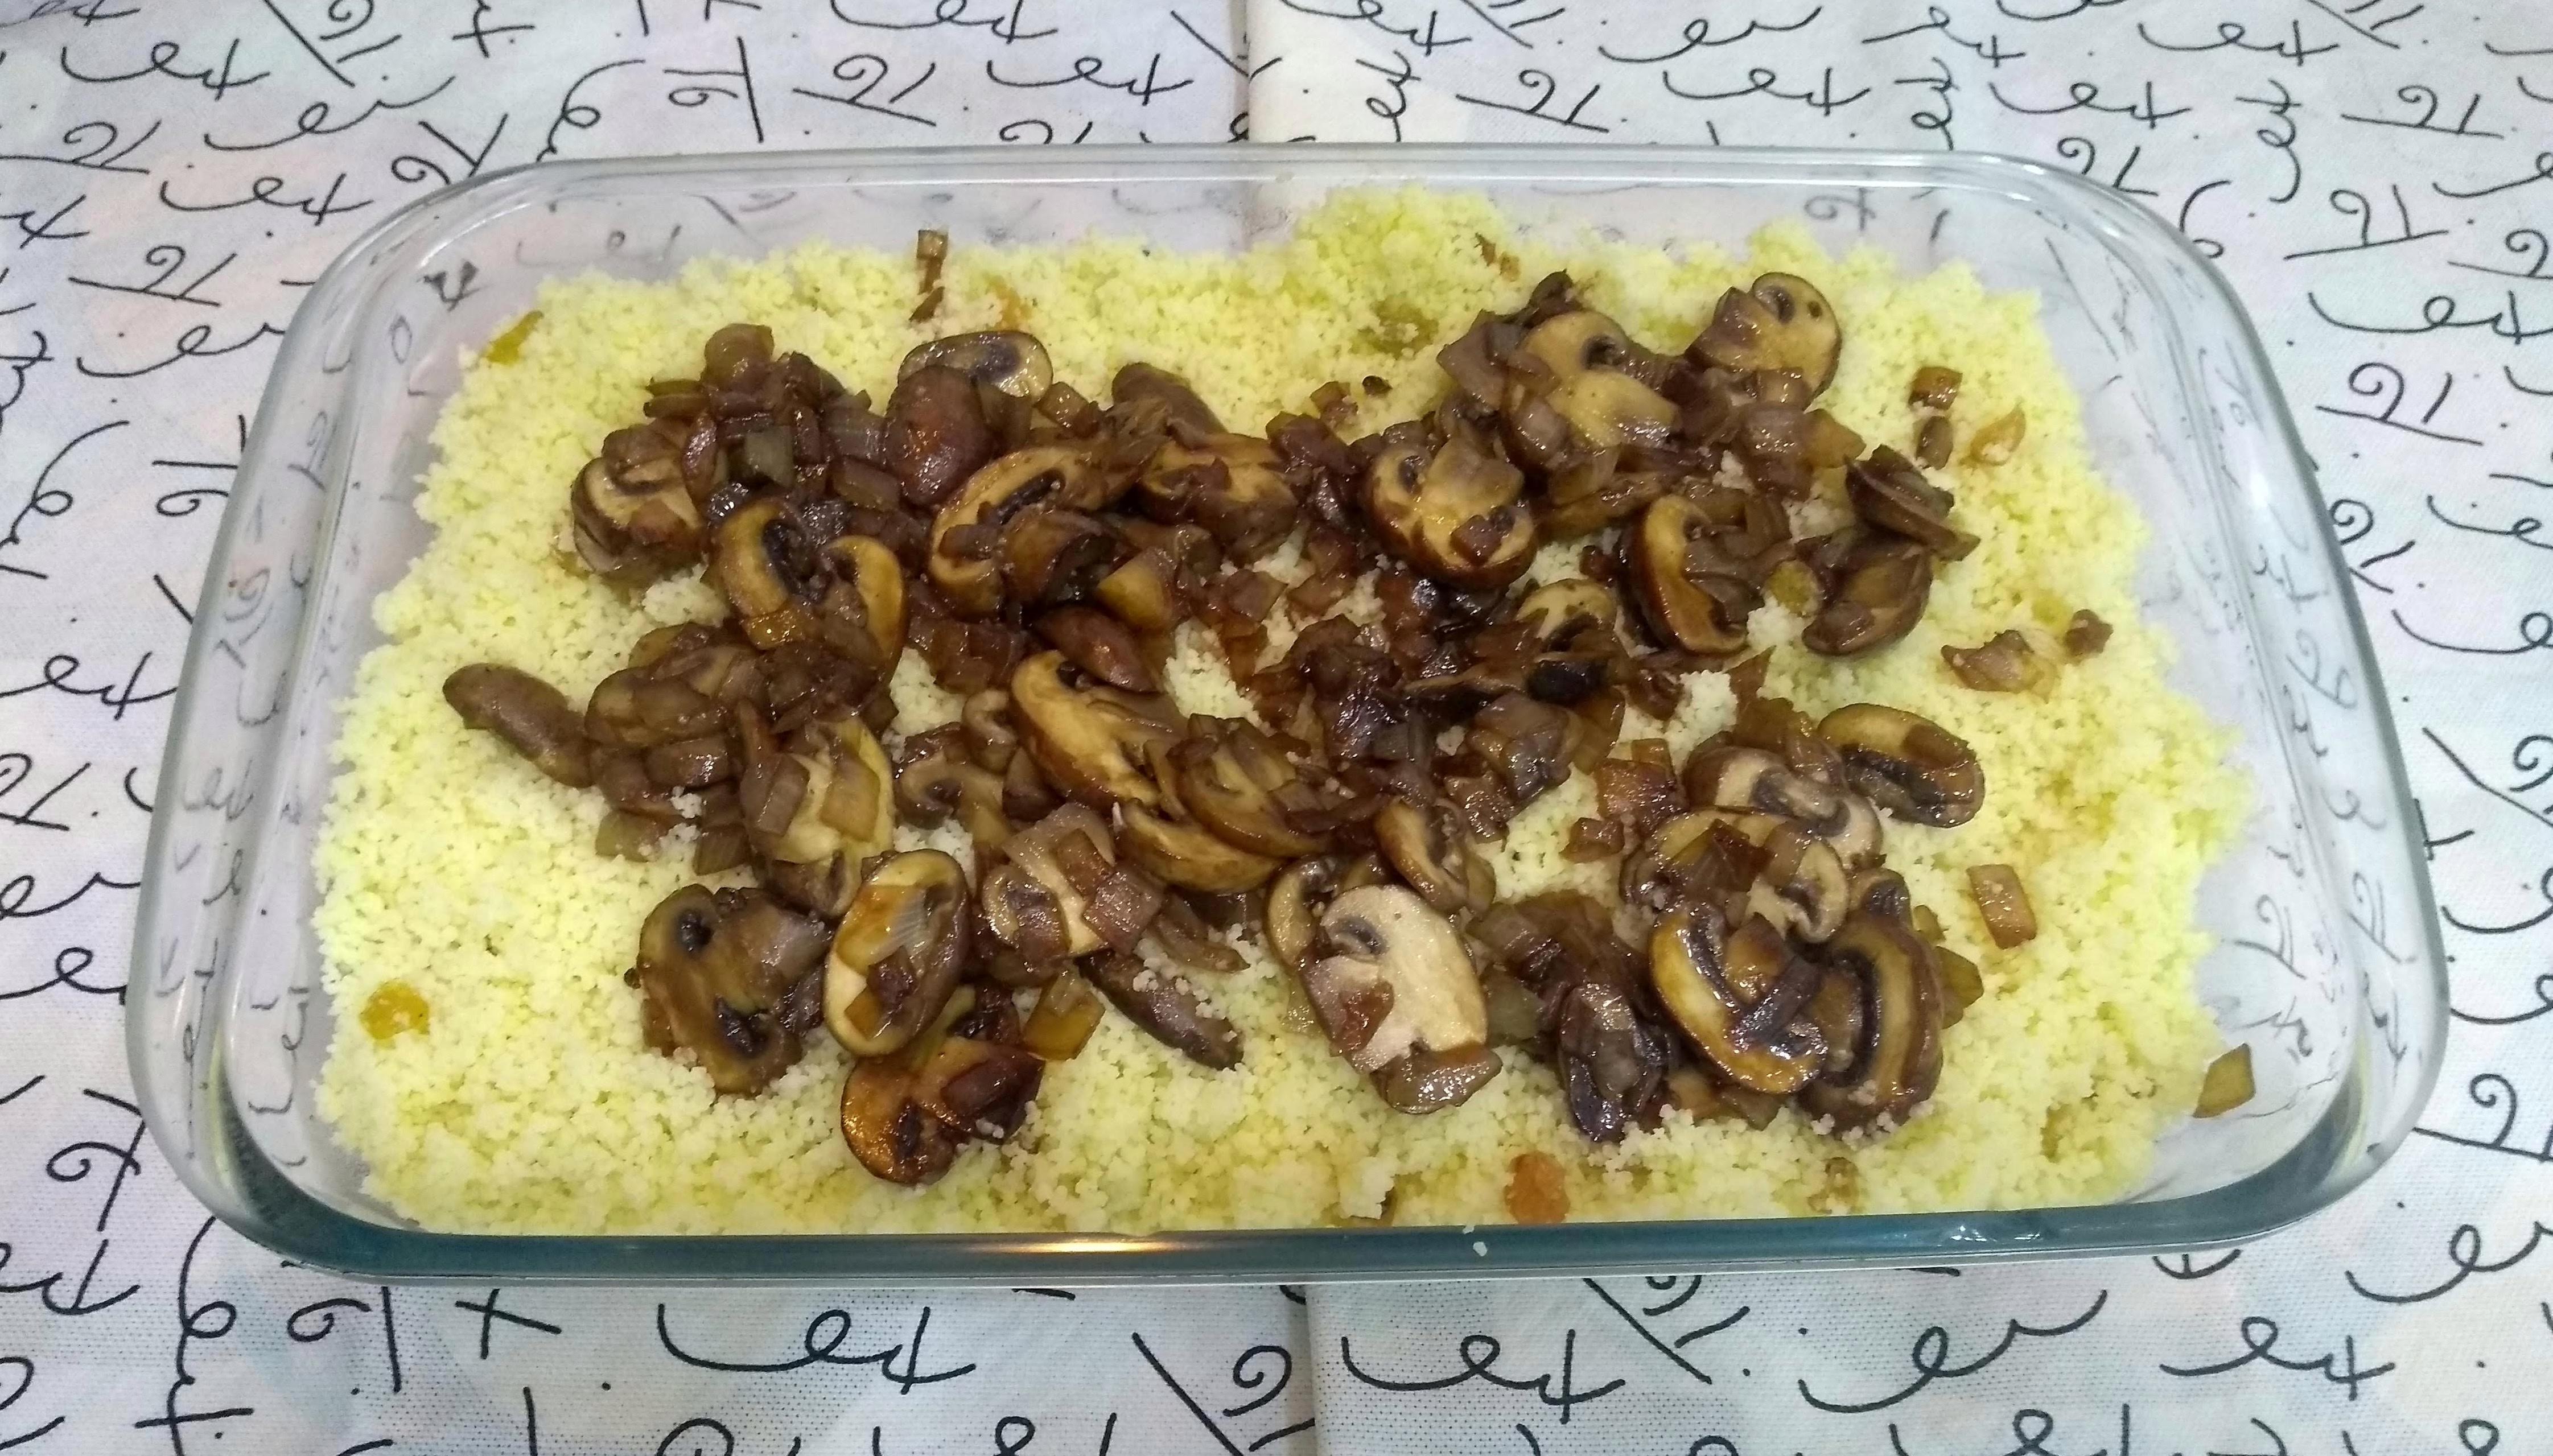 cuscuz marroquino com cogumelos frescos